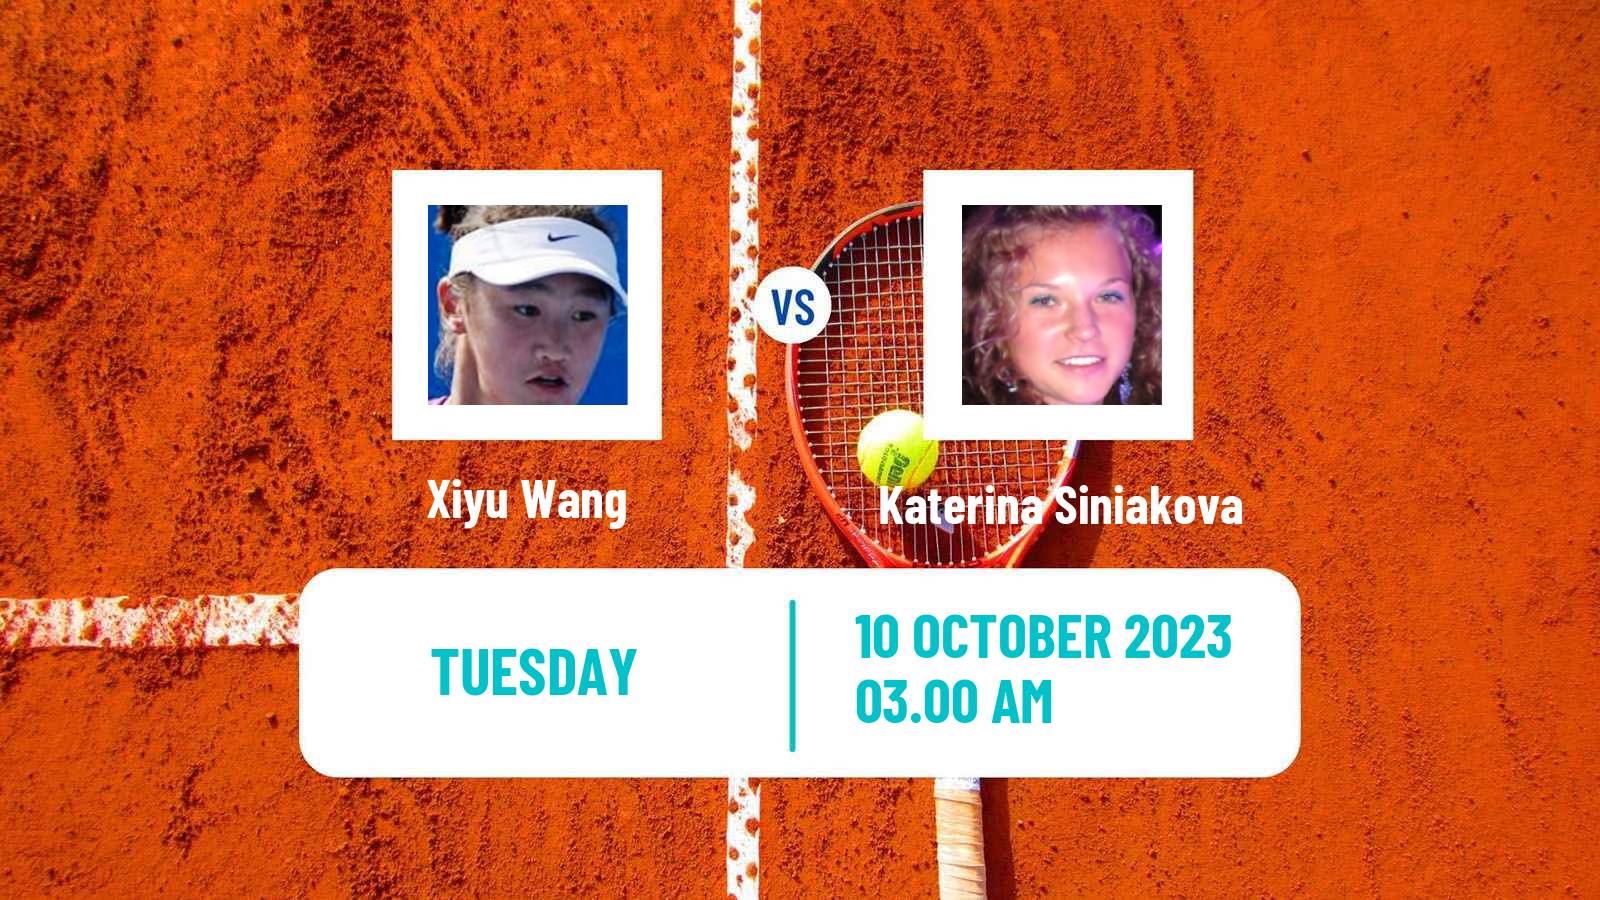 Tennis WTA Hong Kong Xiyu Wang - Katerina Siniakova